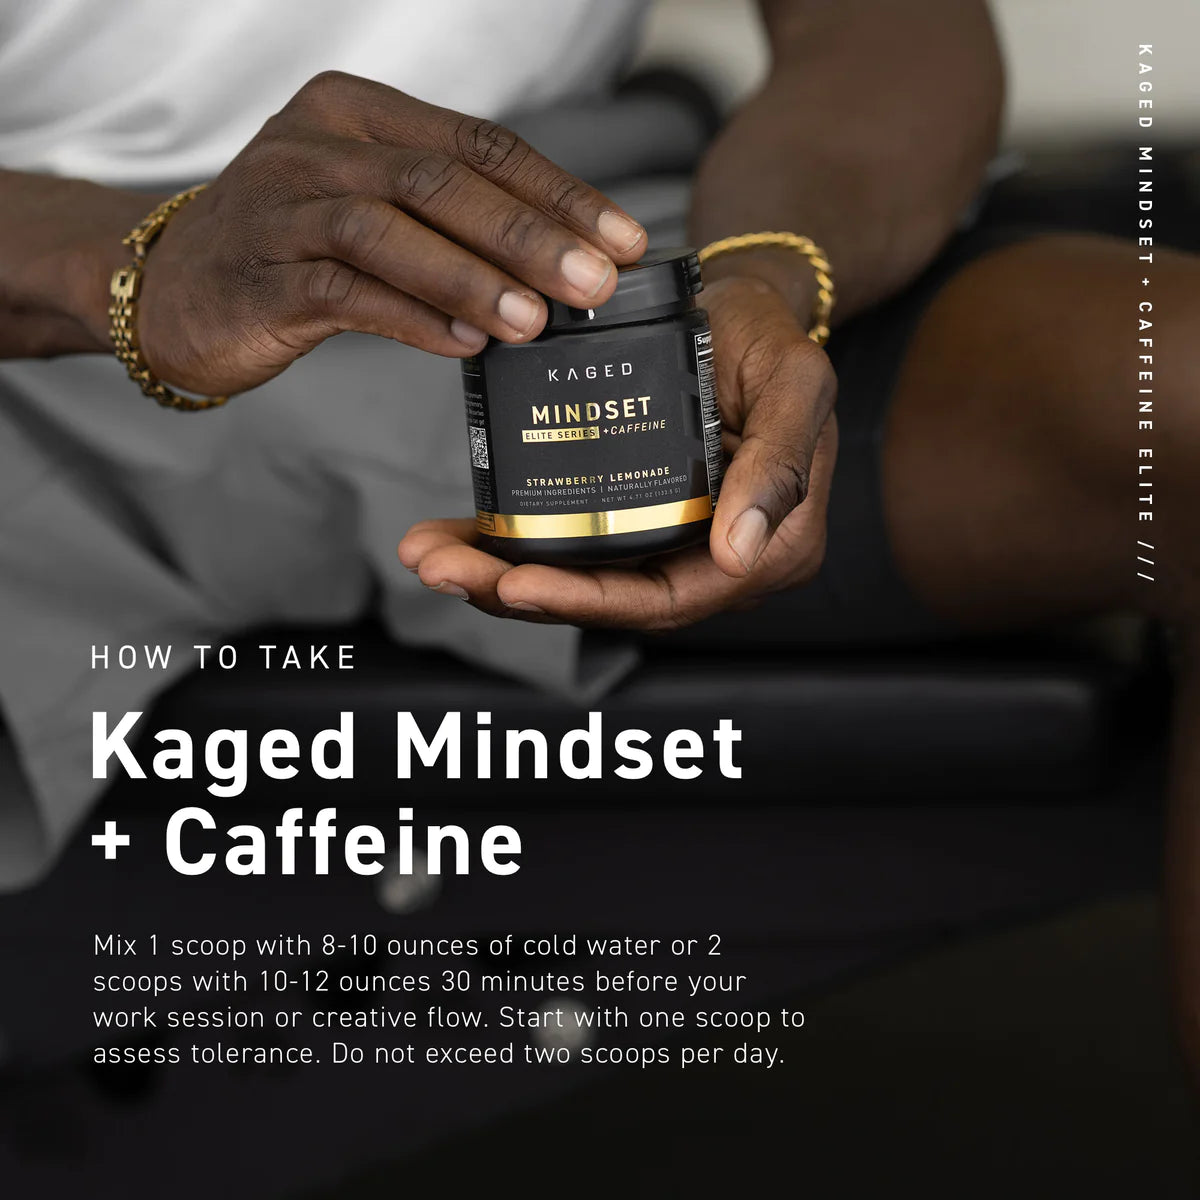 KAGED Elite Series Mindset + Caffeine